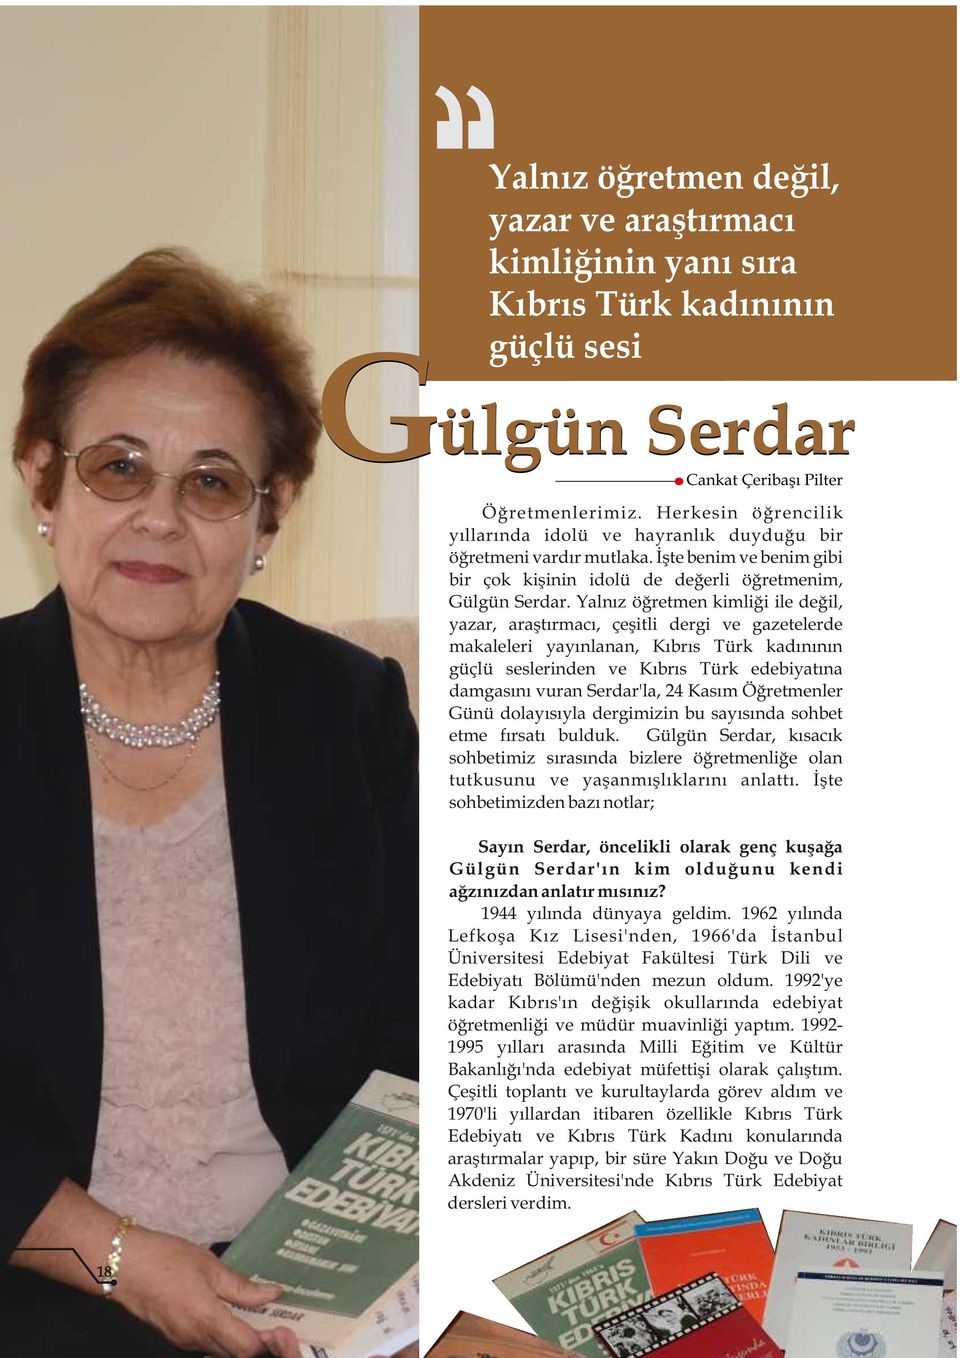 Yalnız öğretmen kimliği ile değil, yazar, araştırmacı, çeşitli dergi ve gazetelerde makaleleri yayınlanan, Kıbrıs Türk kadınının güçlü seslerinden ve Kıbrıs Türk edebiyatına damgasını vuran